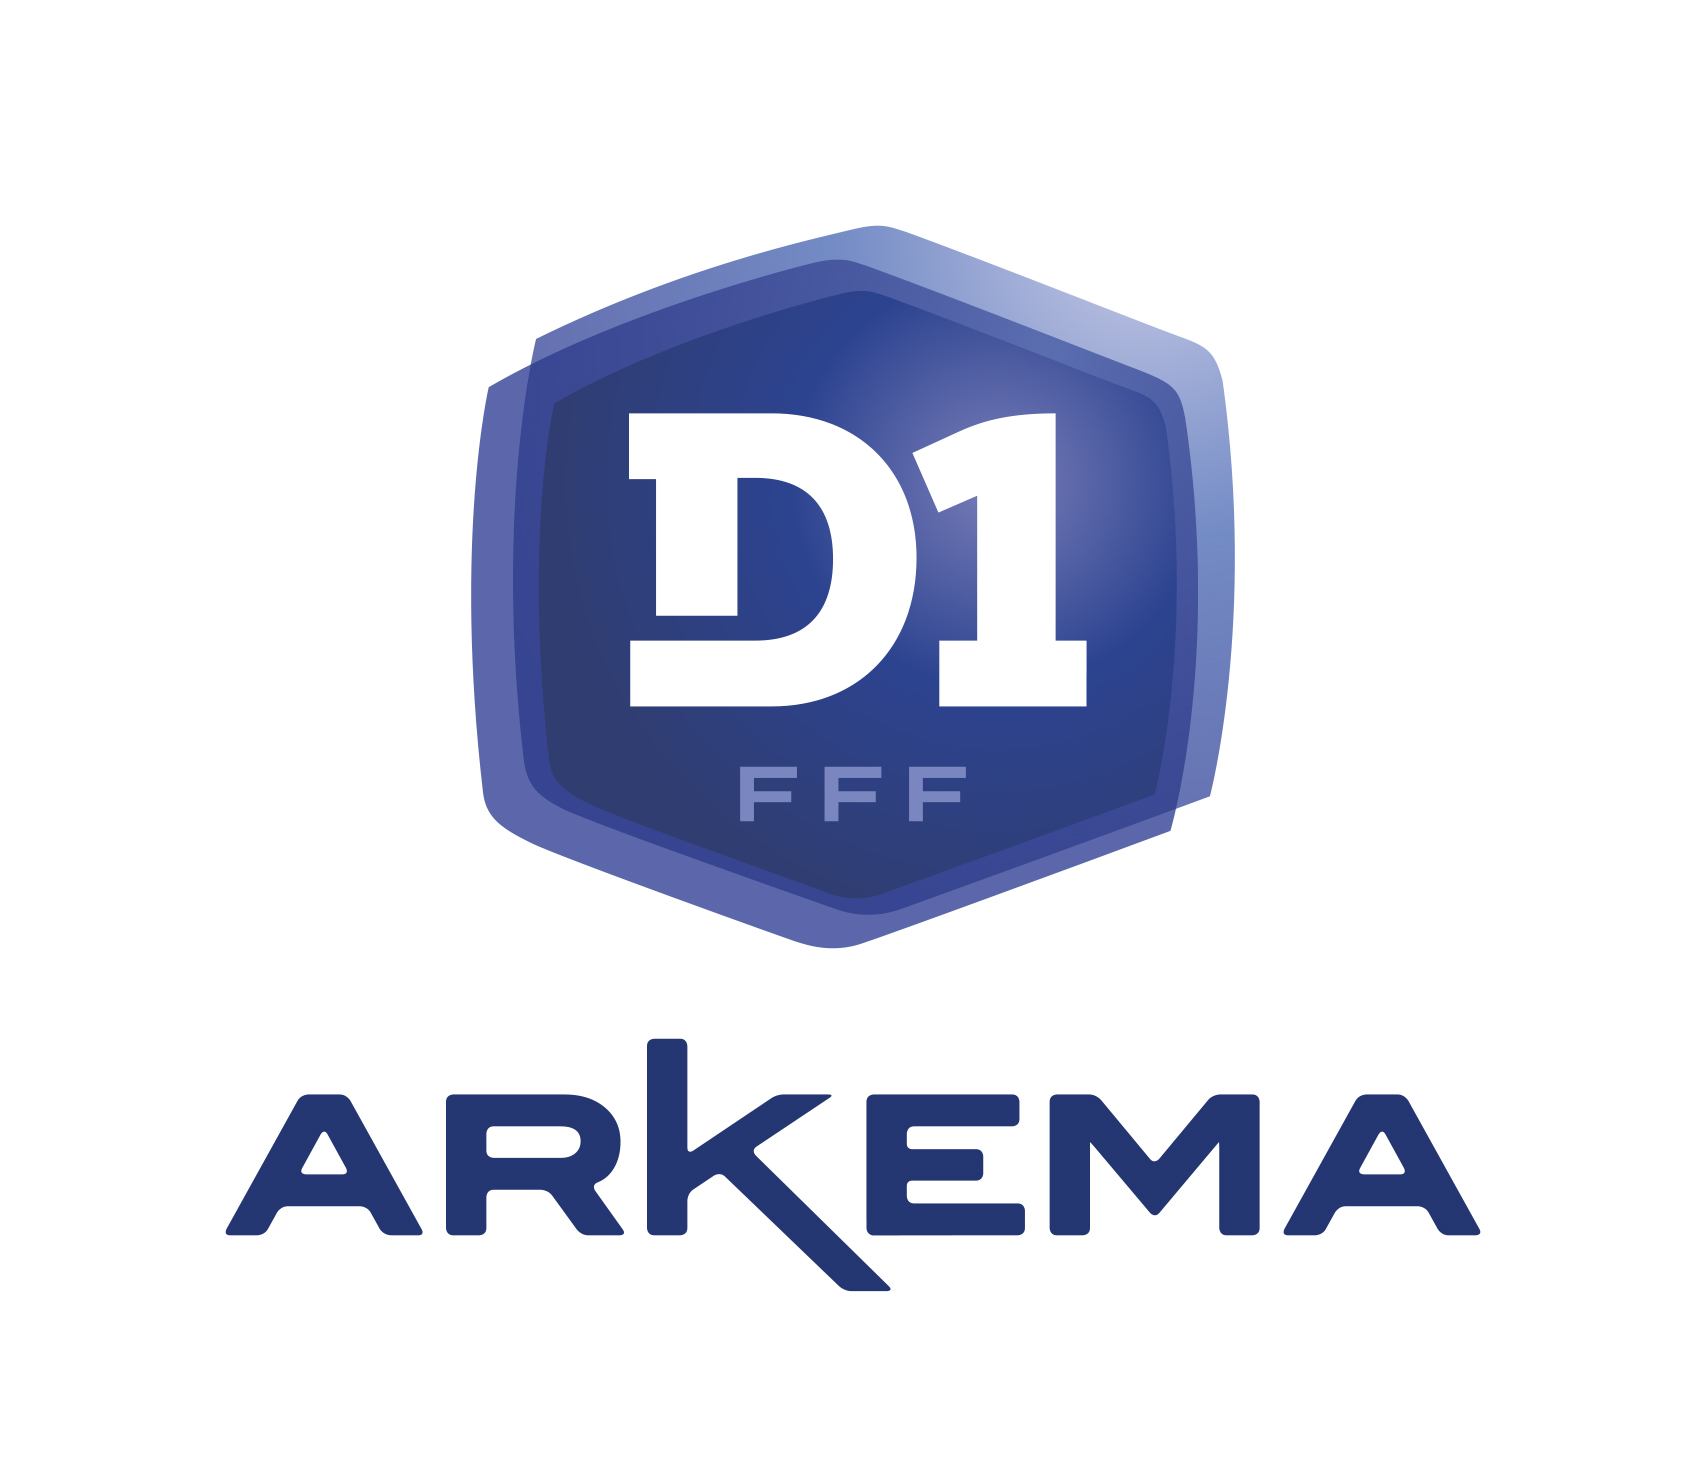 #D1Arkema - J11 : 11 sur 11 pour l'OL, l'ASSE enfonce BORDEAUX, le PSG remporte le derby